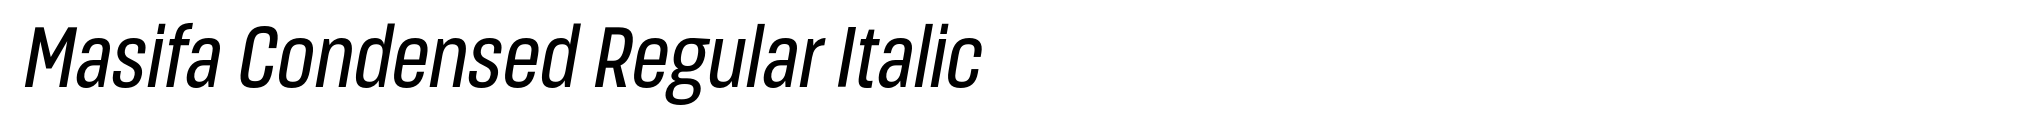 Masifa Condensed Regular Italic image